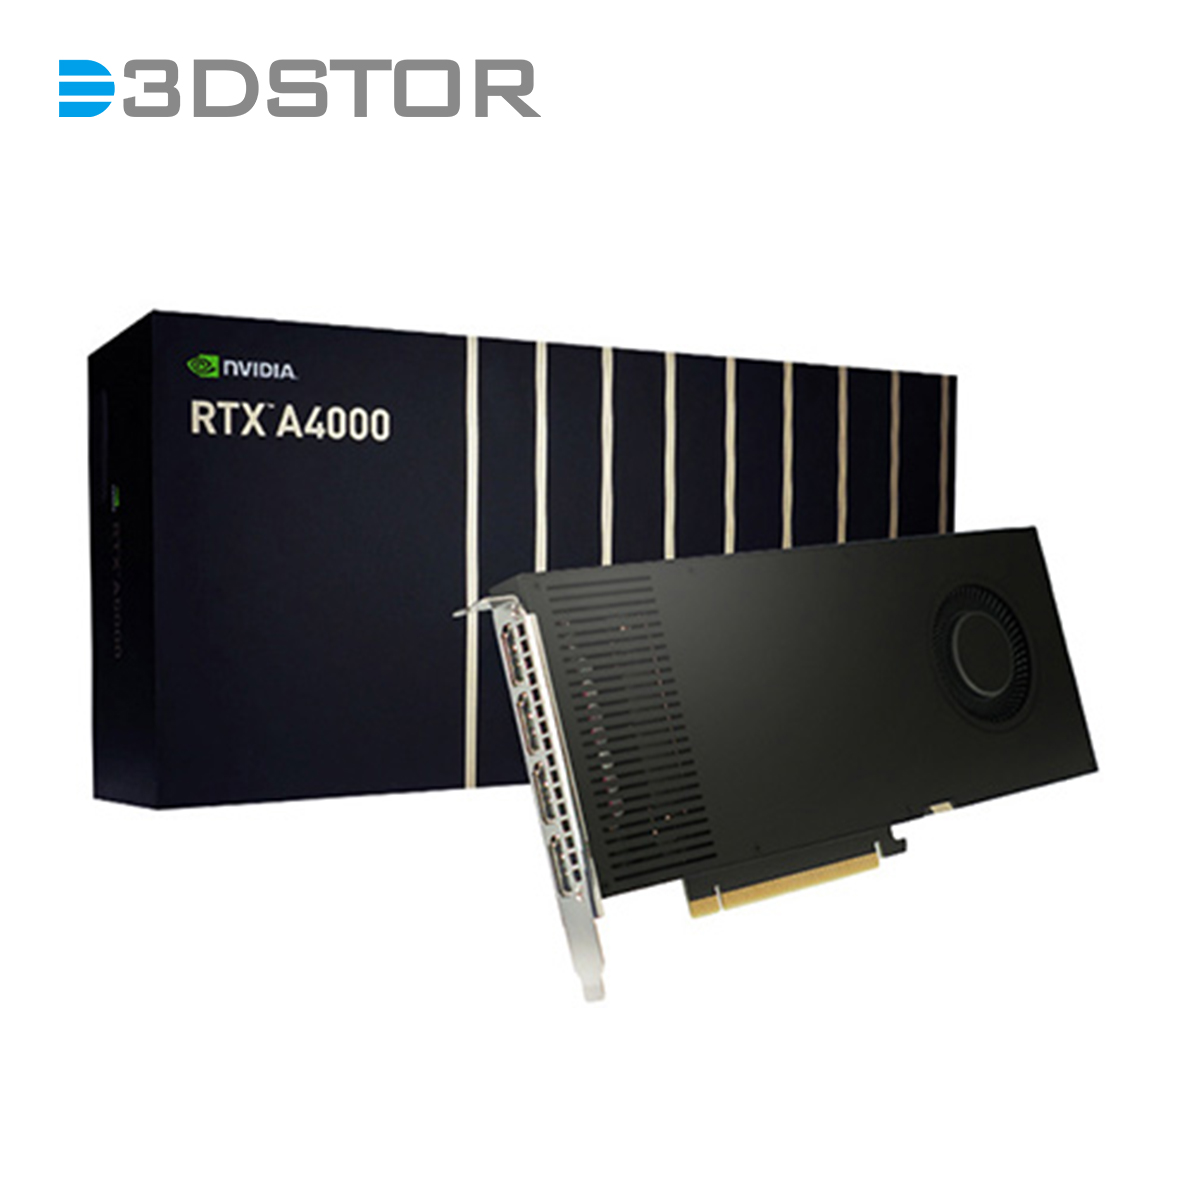 NVIDIA RTX A4000 - 3DSTOR Technology CO.,LTD